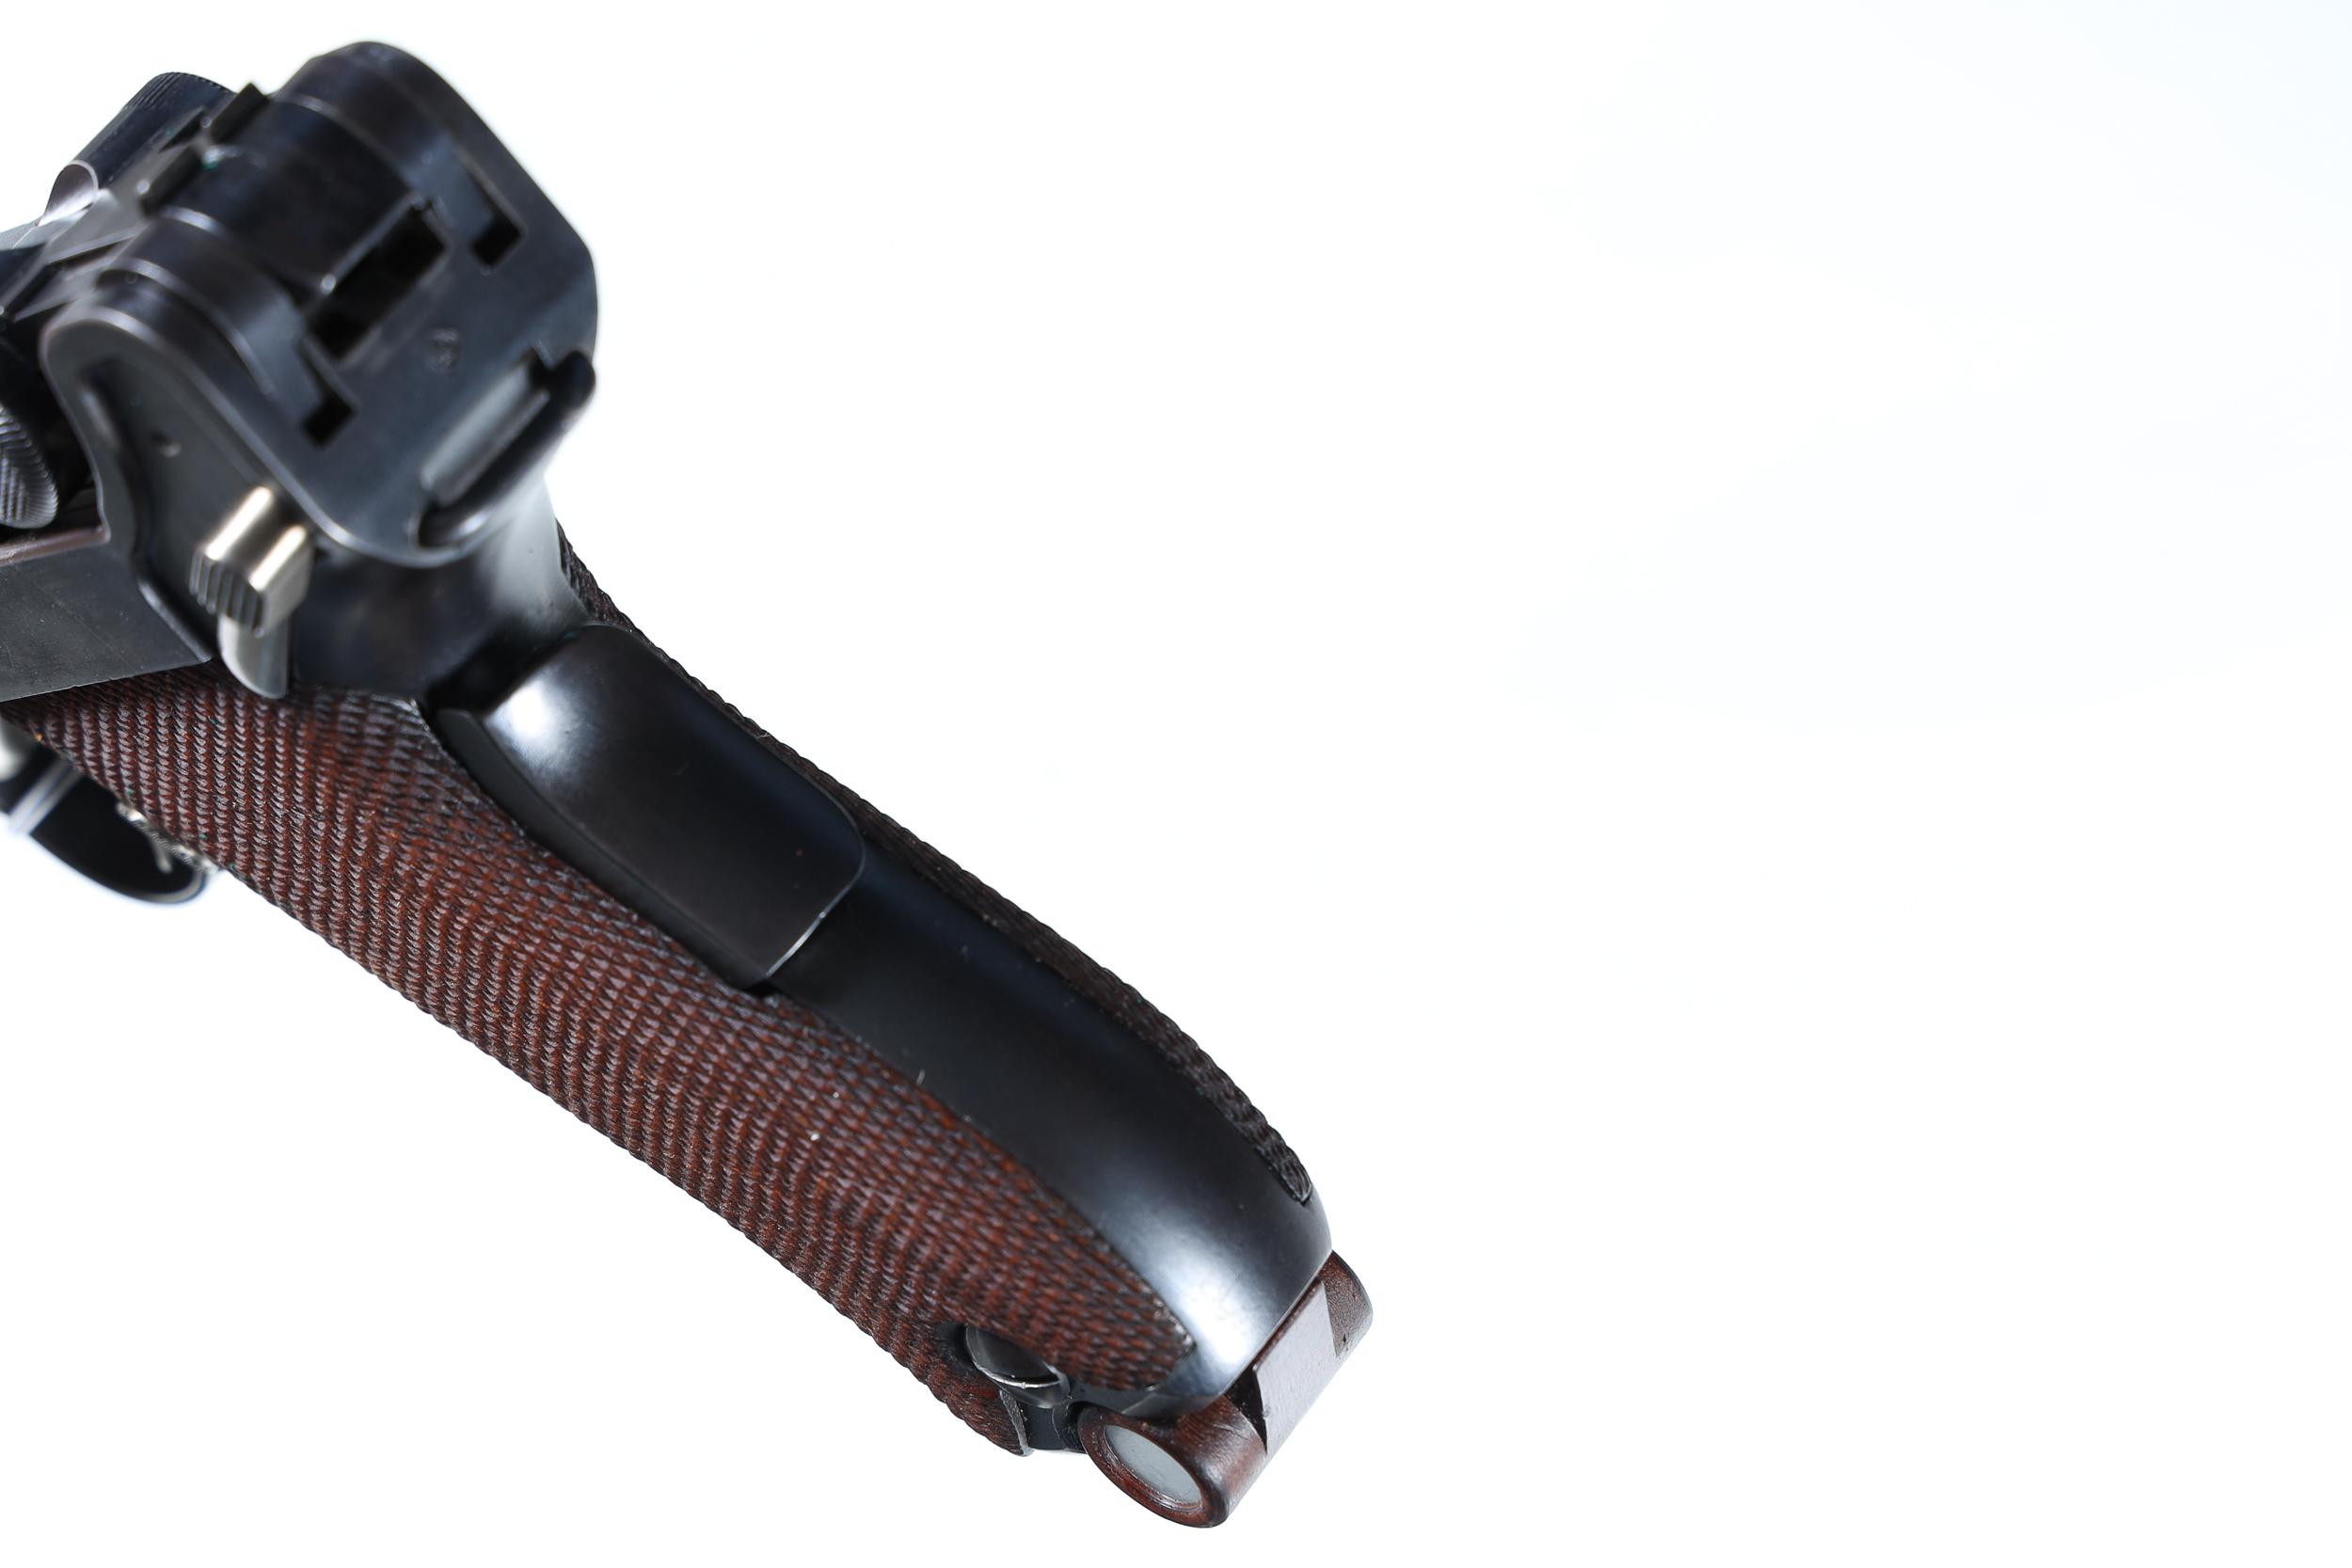 DWM 1906 Pistol 7.65 mm